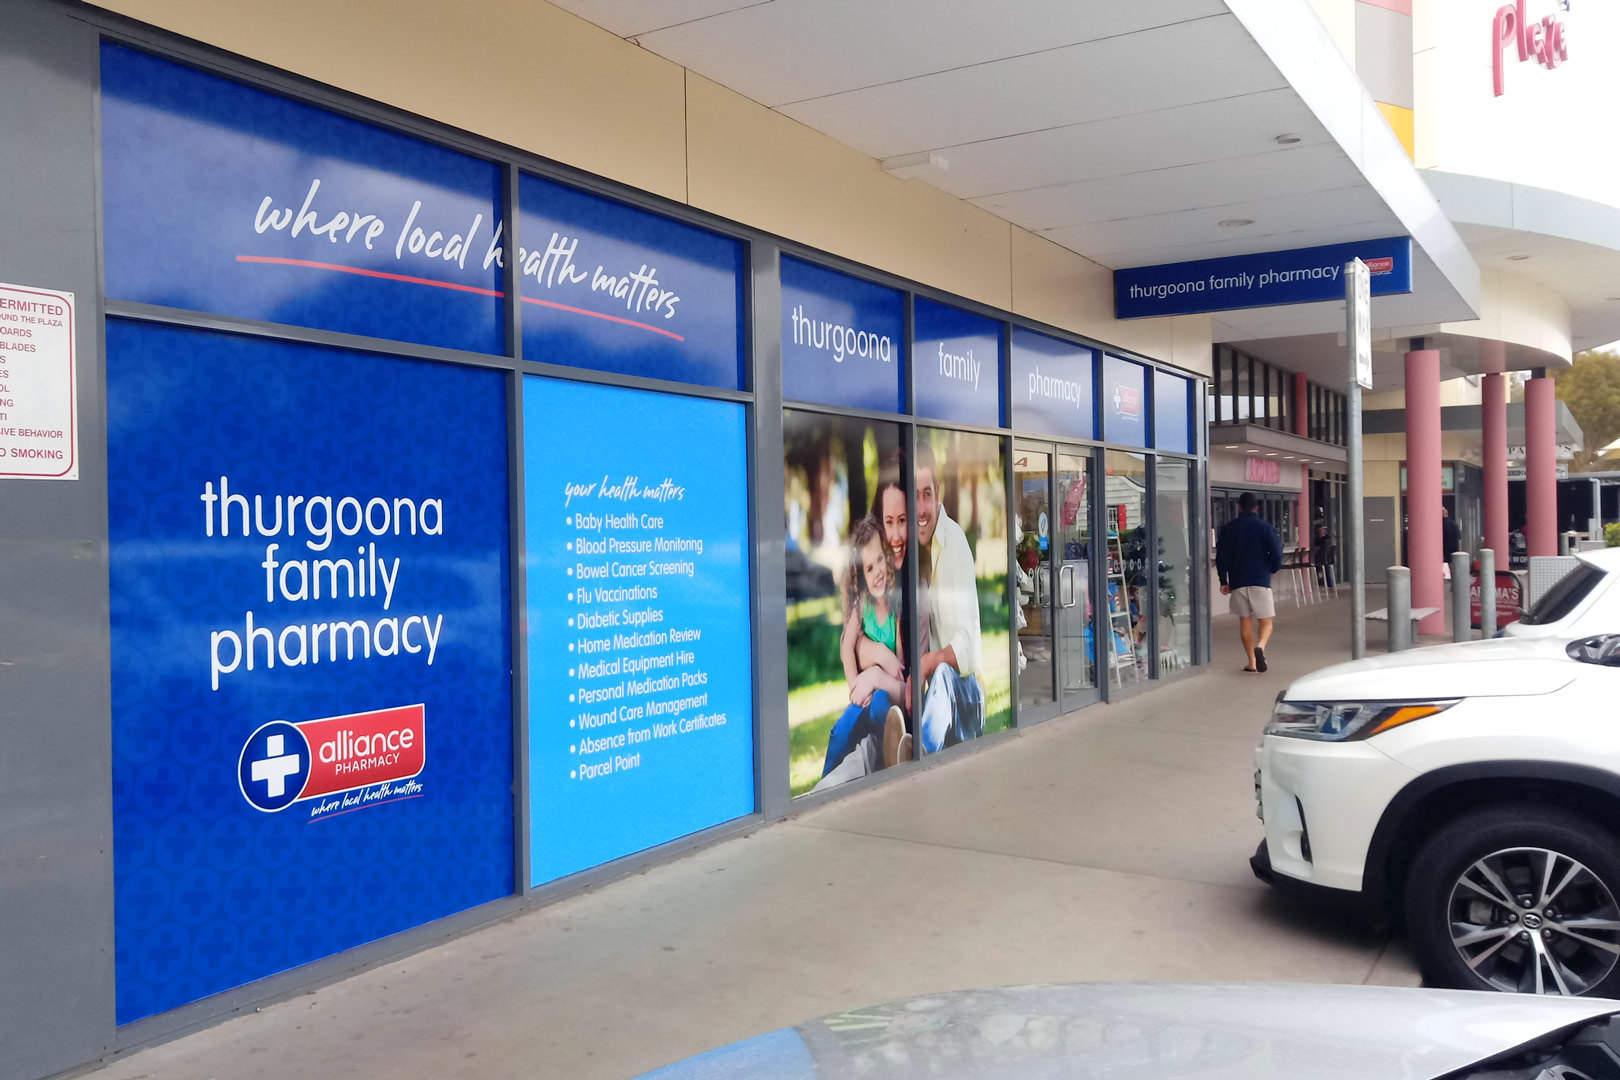  Thurgoona Family Pharmacy 